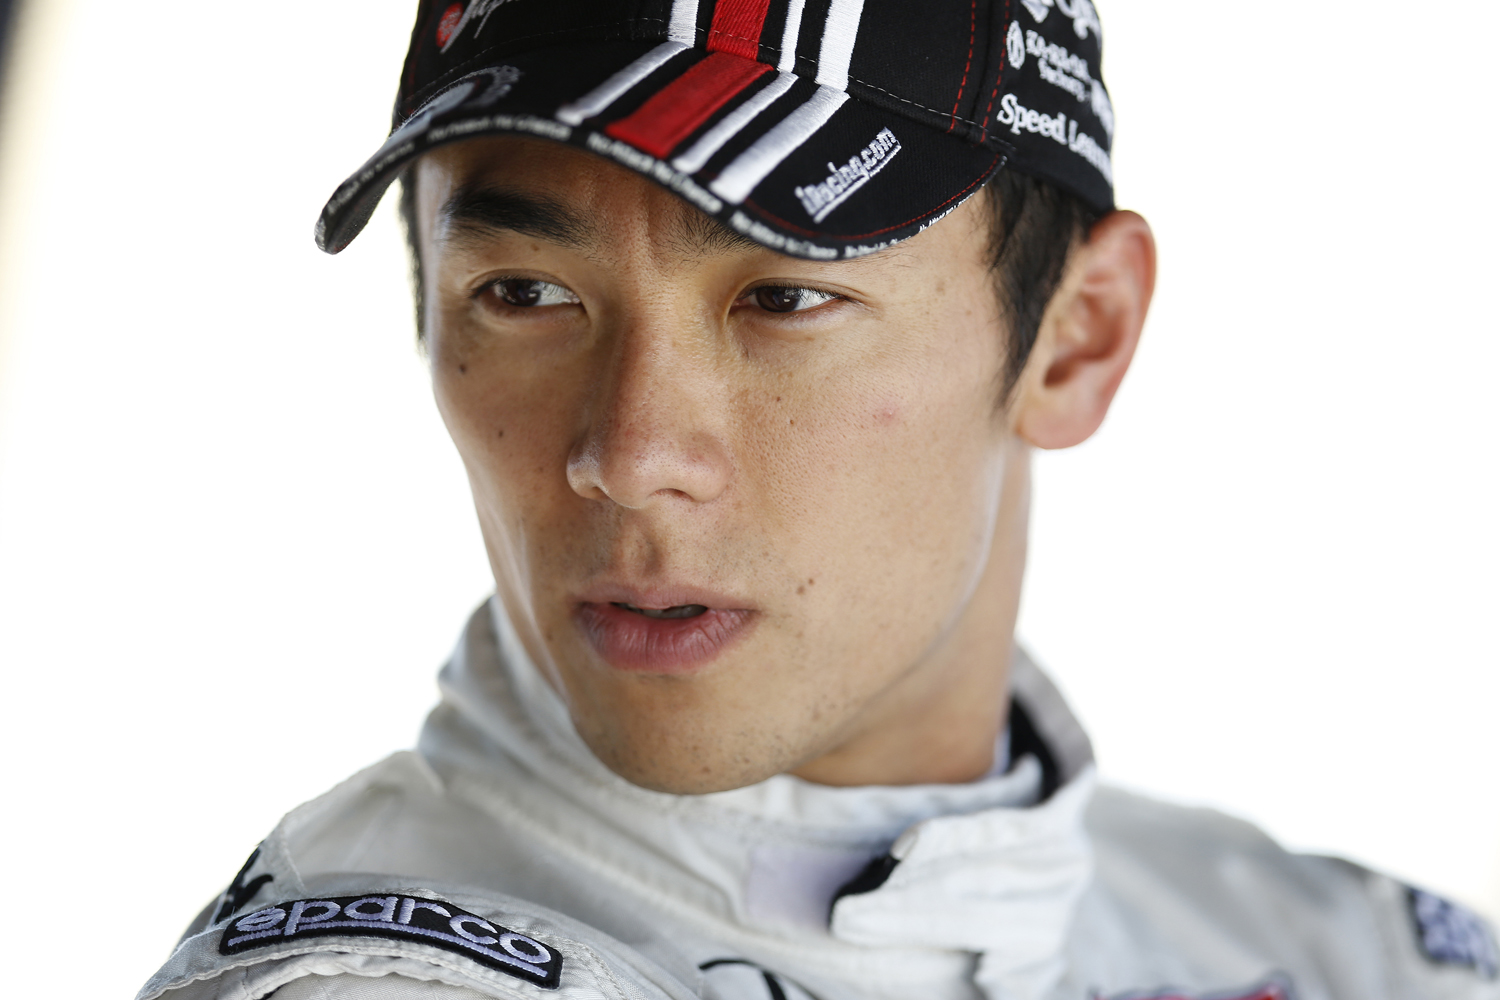 元f1レーサー佐藤琢磨選手がフォーミュラ ニッポンにスポット参戦 日本での凱旋バトルに注目 Goo 自動車